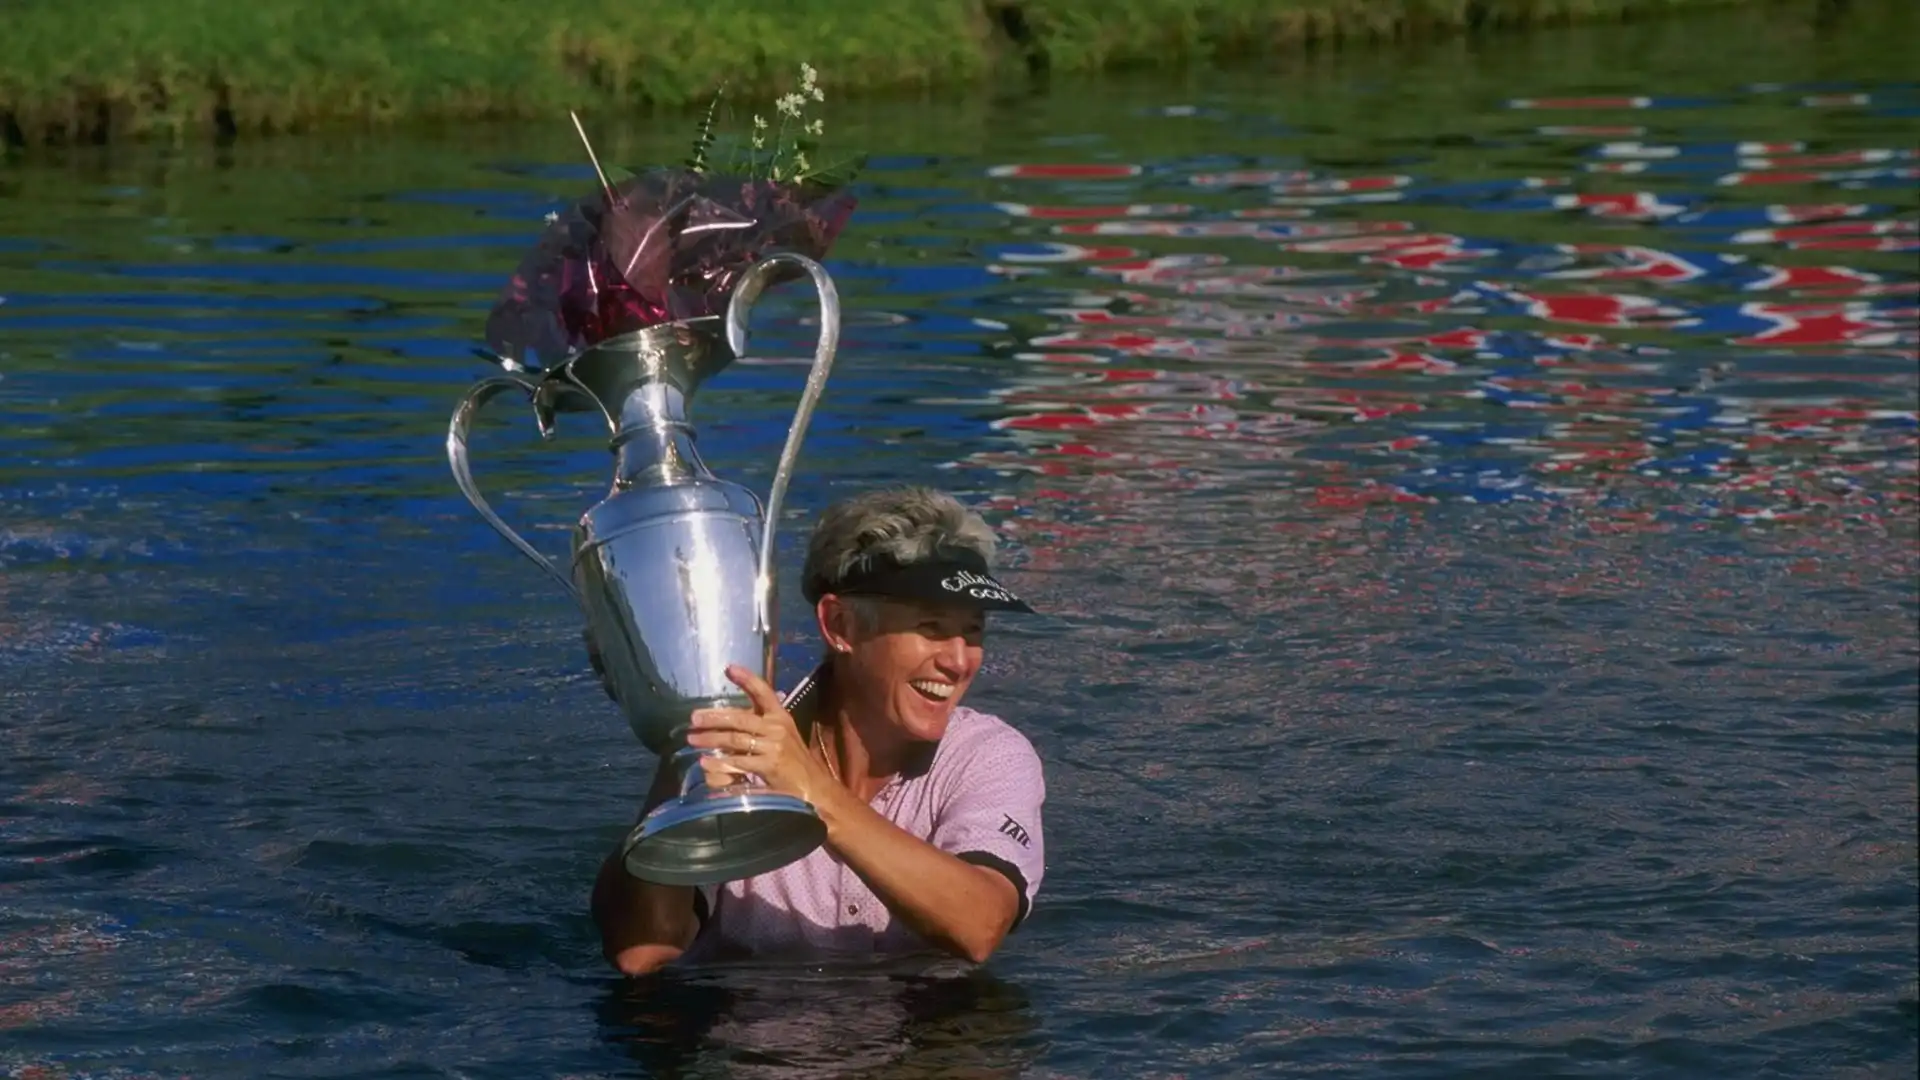 3 Patty Sheehan (Stati Uniti): 35 vittorie in LPGA. Tra le più grandi golfiste della storia, ha vinto 6 Major in carriera